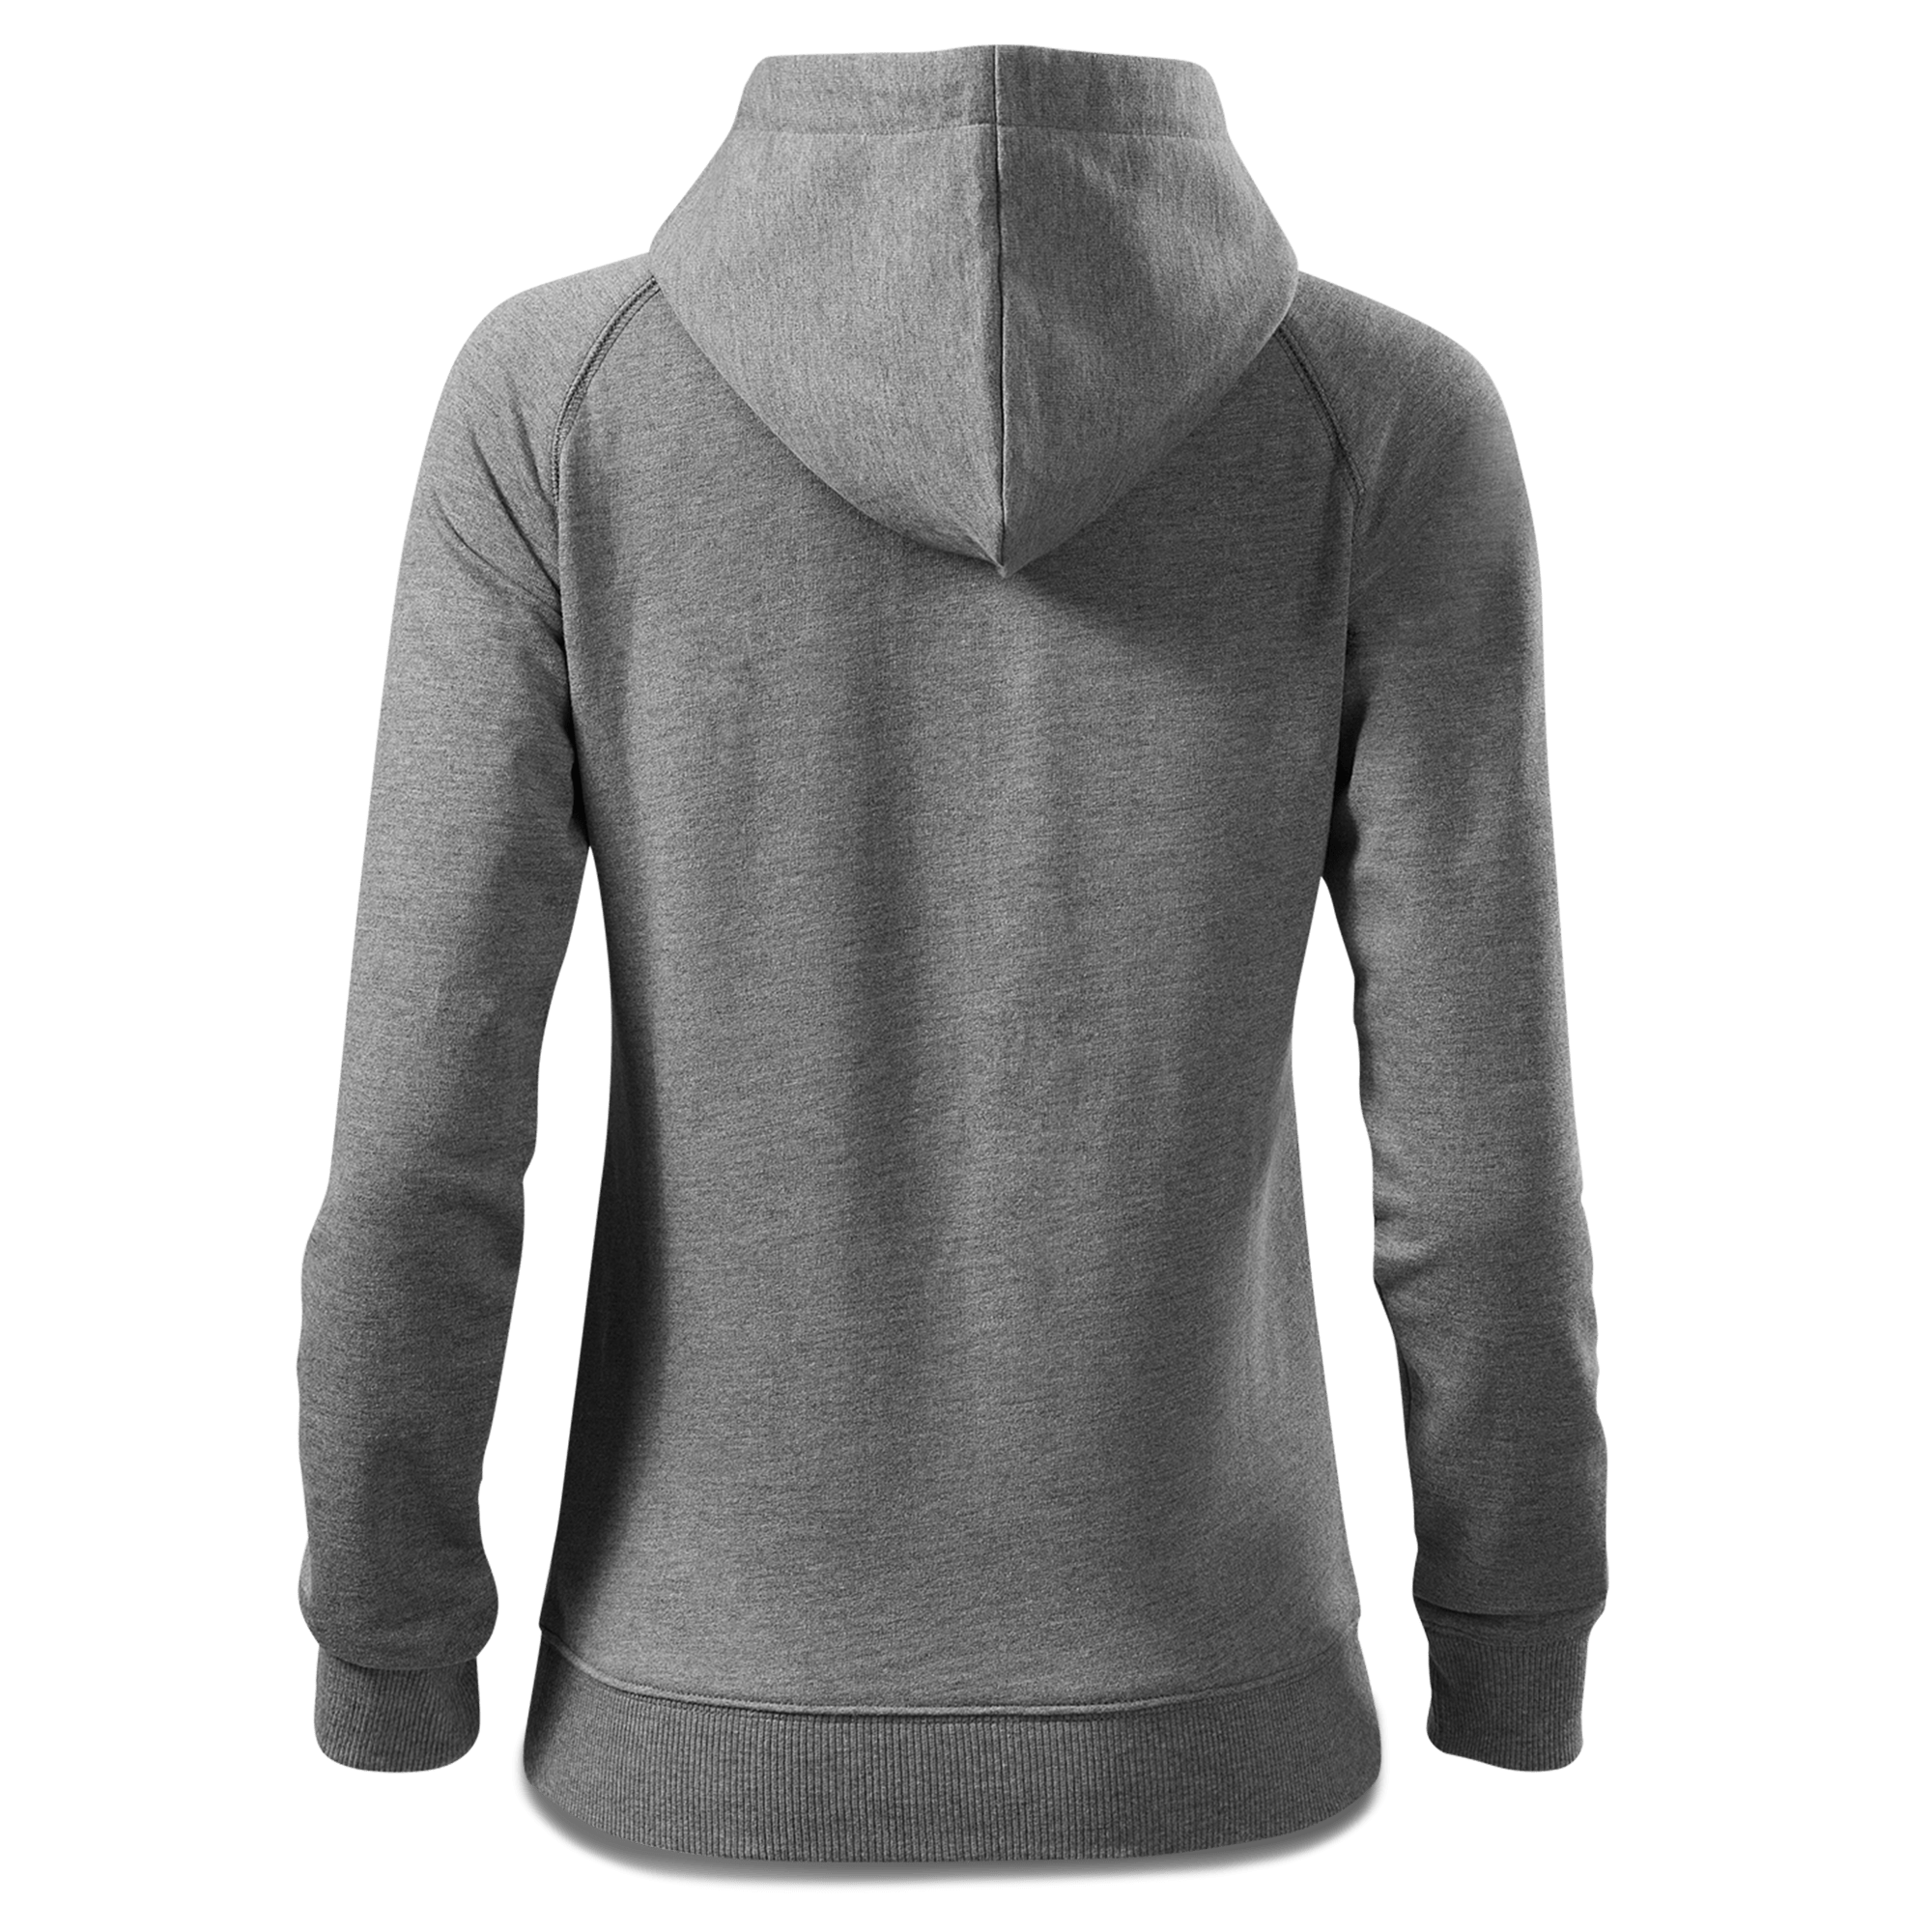 Die Sinzerin Trachtenverein Sweatshirt Zip Hoody Damen Grau Meliert Kreut Back